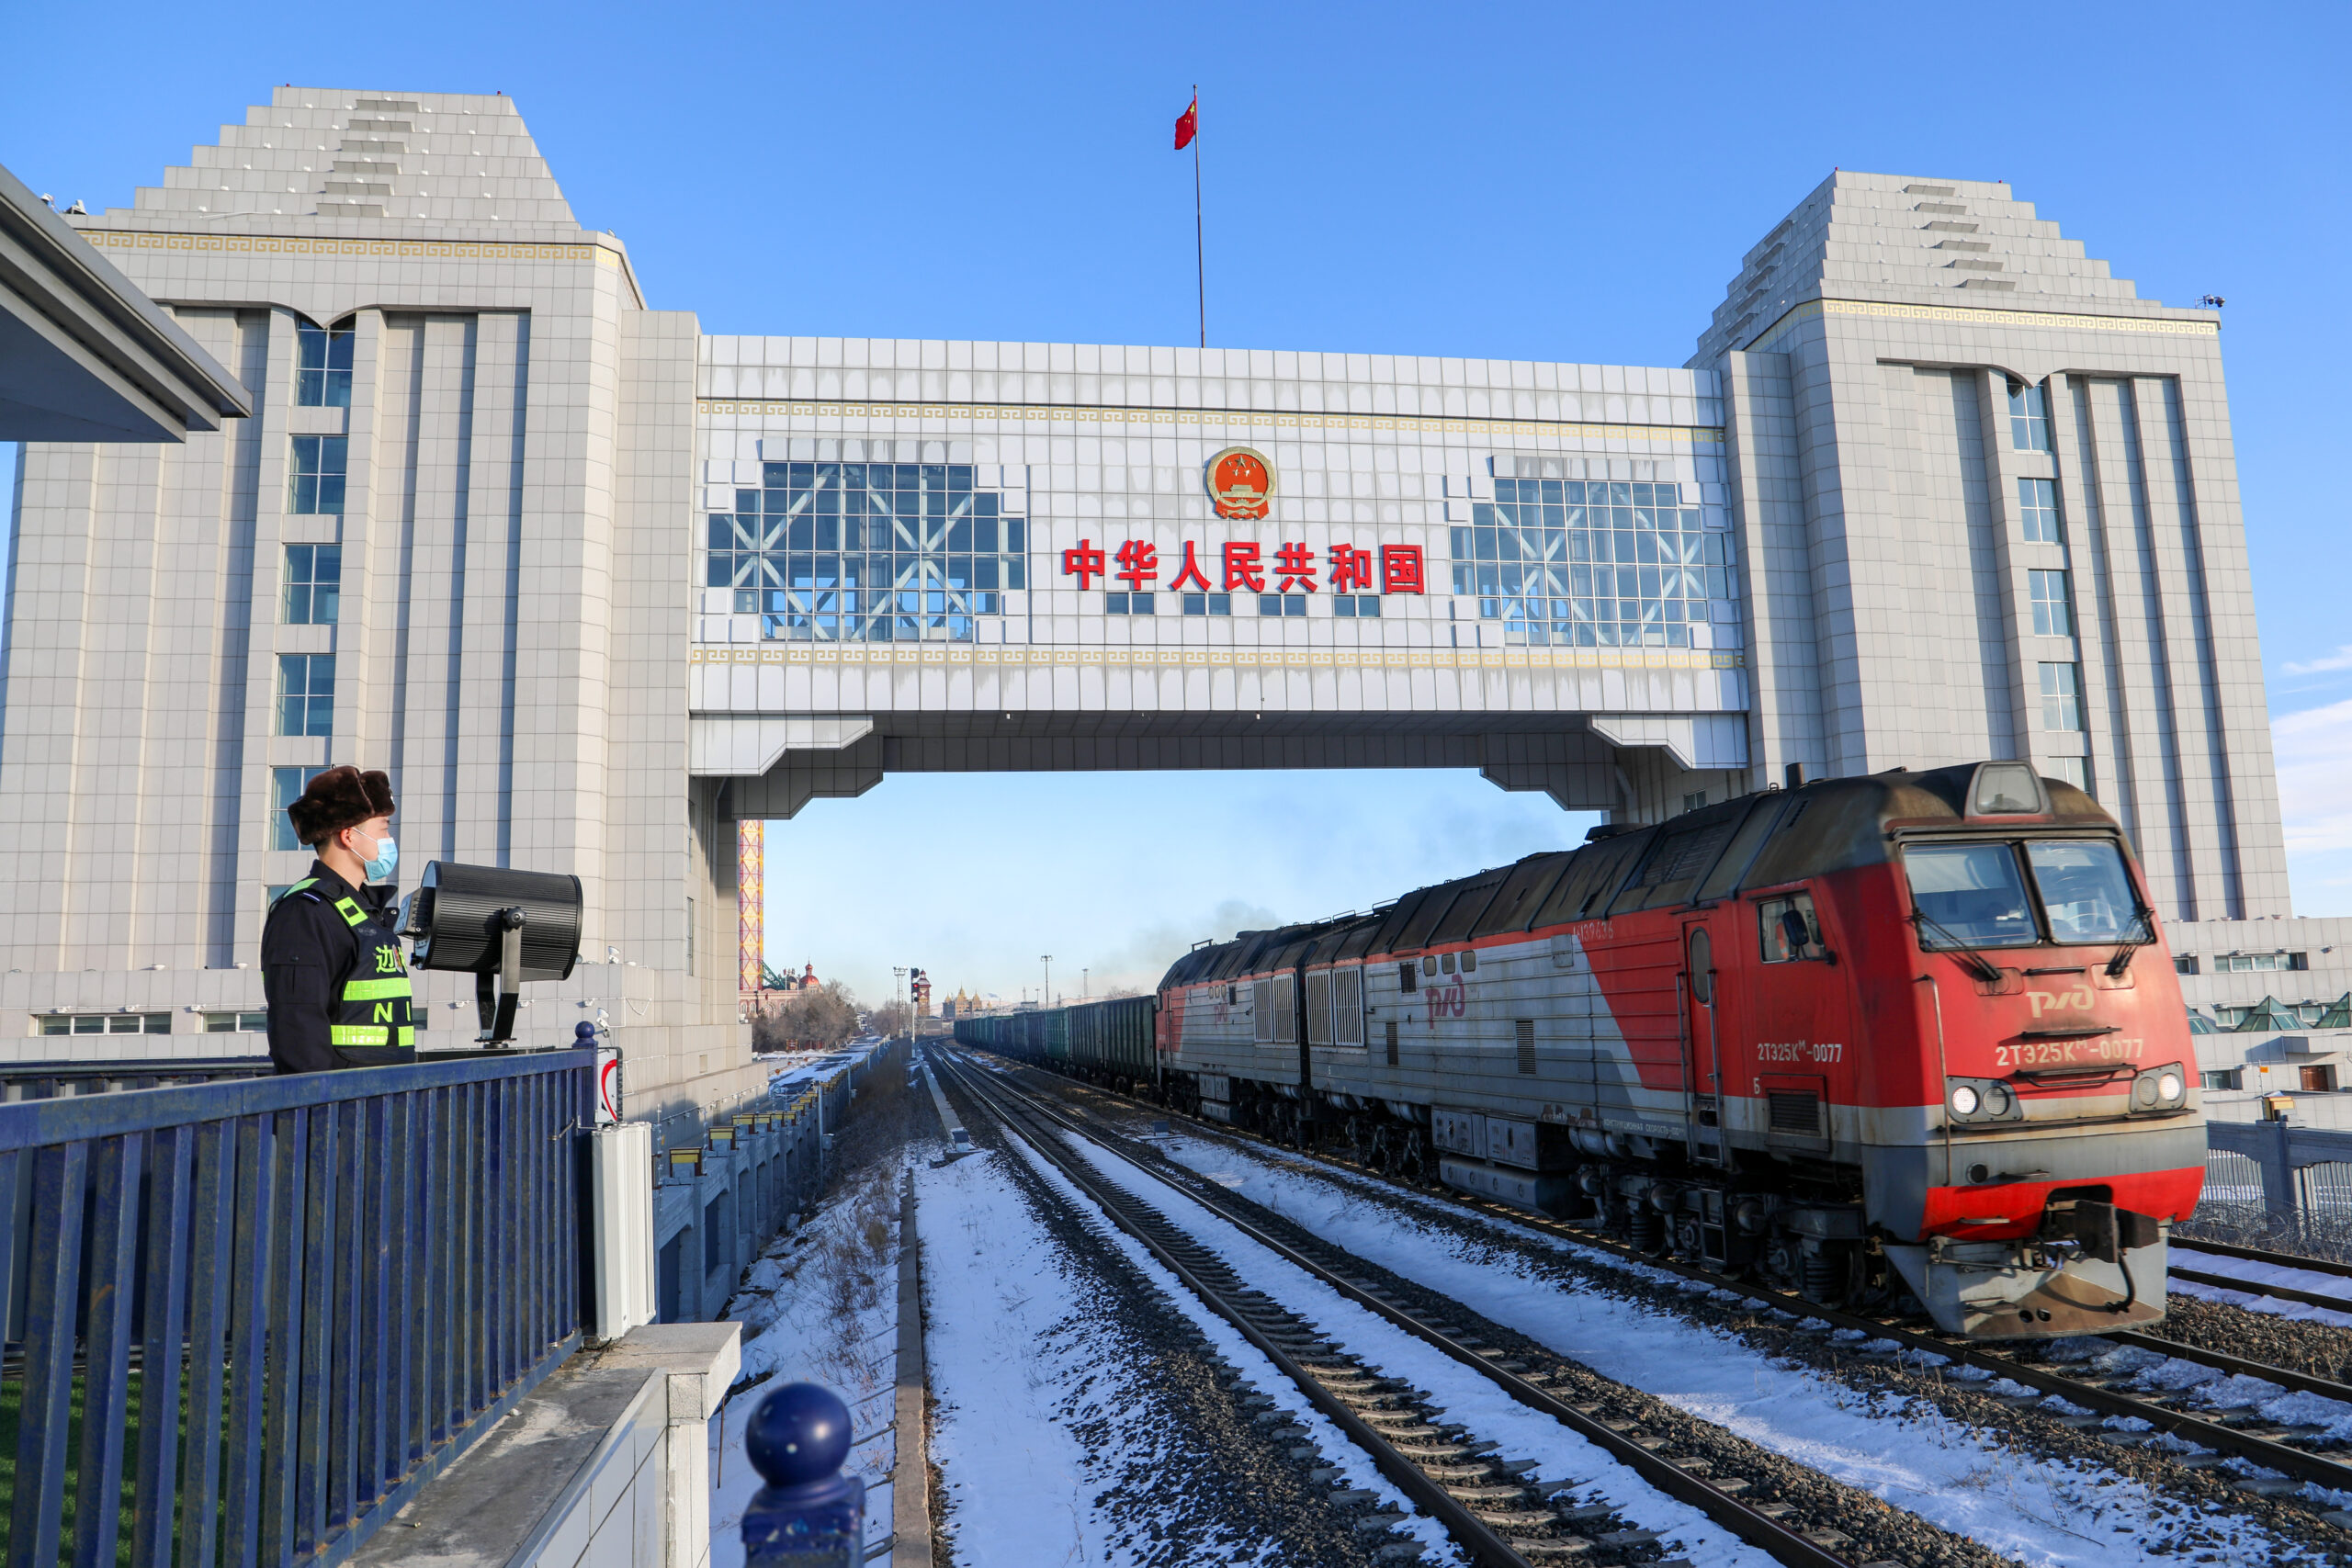 ด่านบกใหญ่สุดในจีน บริการรถไฟสินค้าจีน-ยุโรปเพิ่มขึ้น